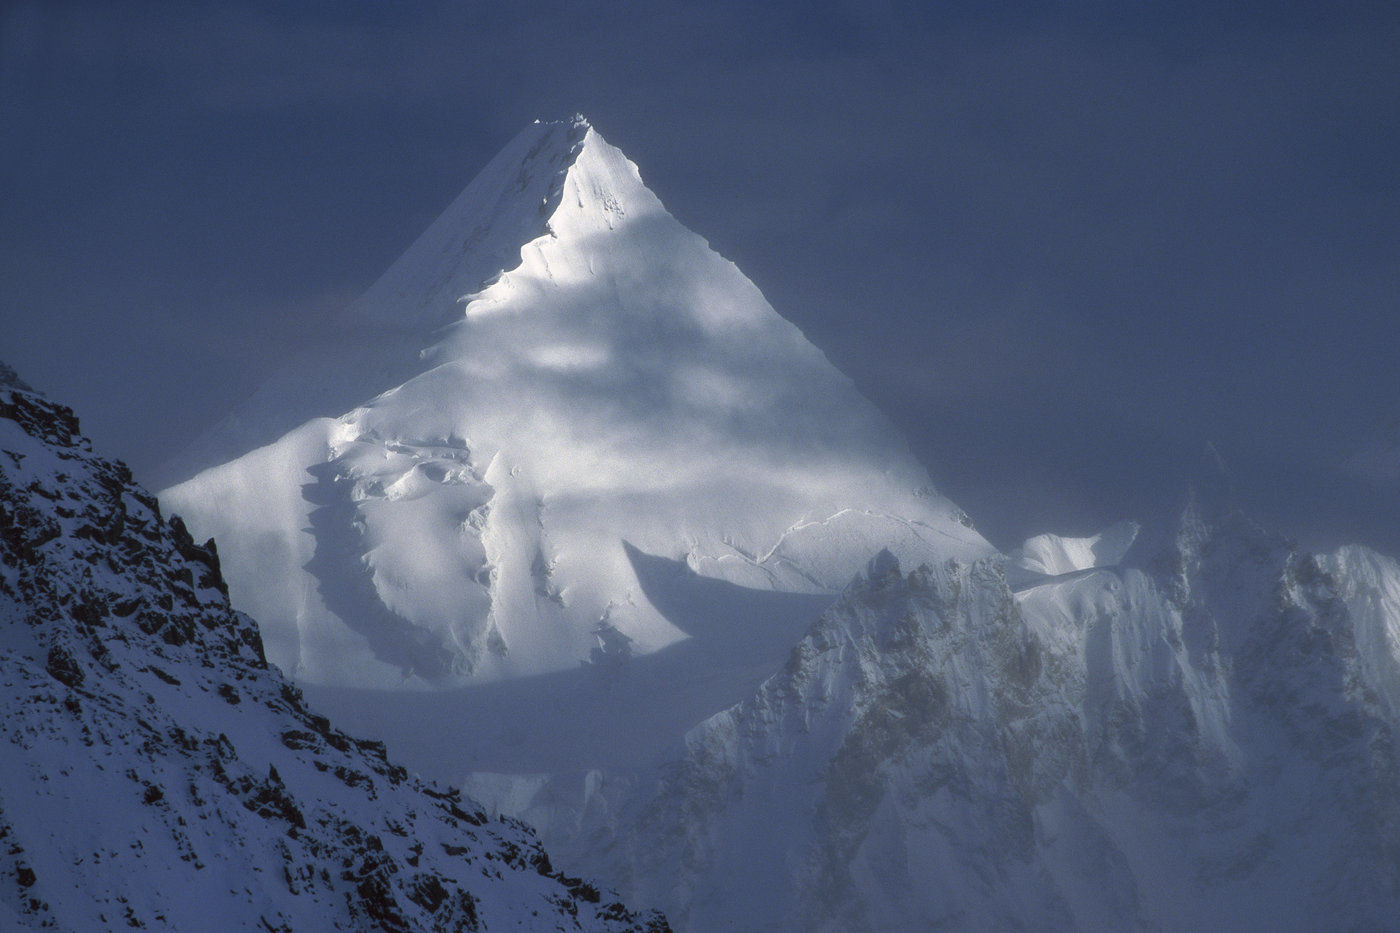  K2 (Чогори) - одна из самых опасных вершин в мире